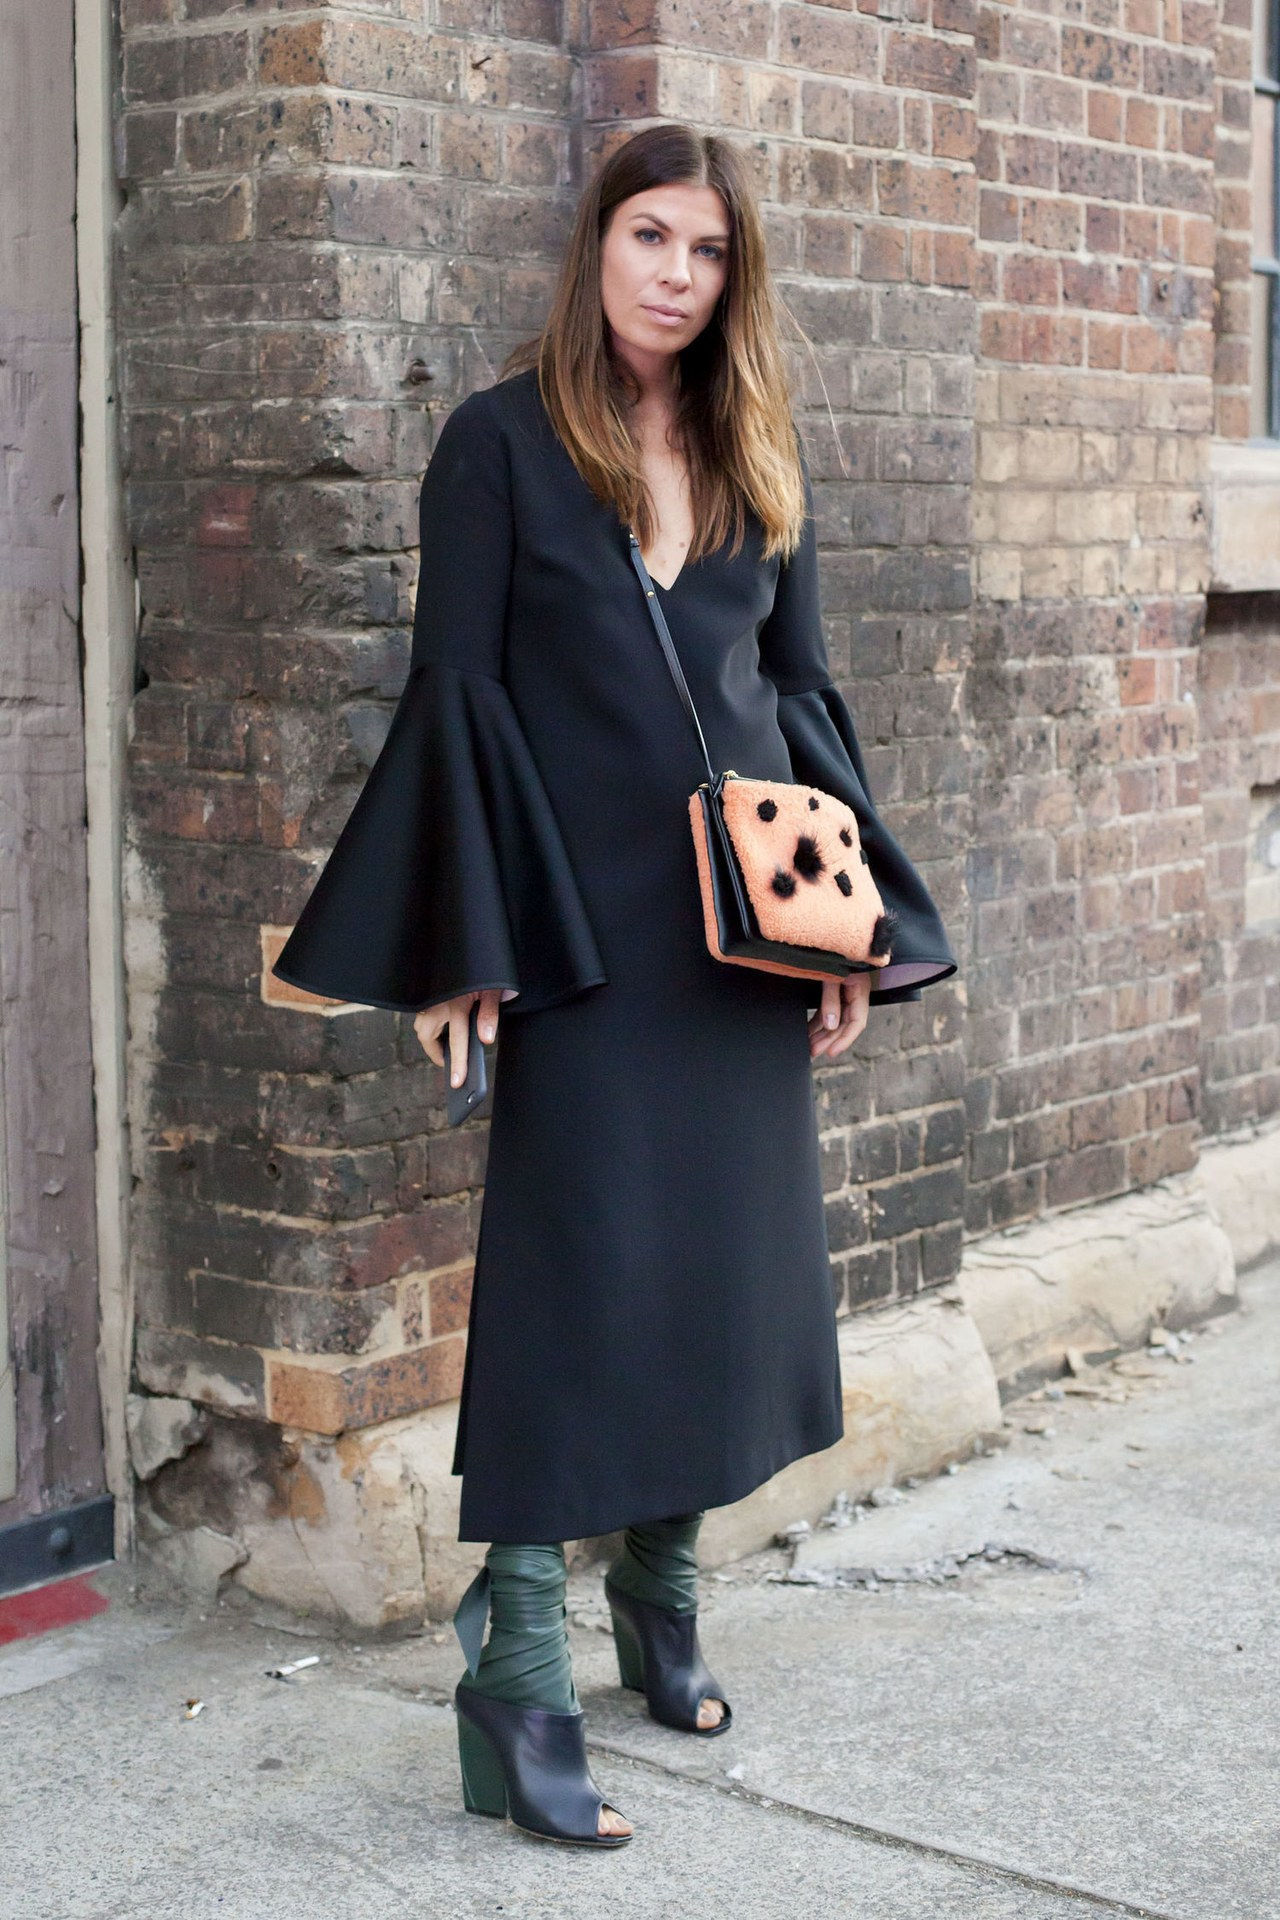 جرس sleeve top outfit ideas black dress chunky heels getty images